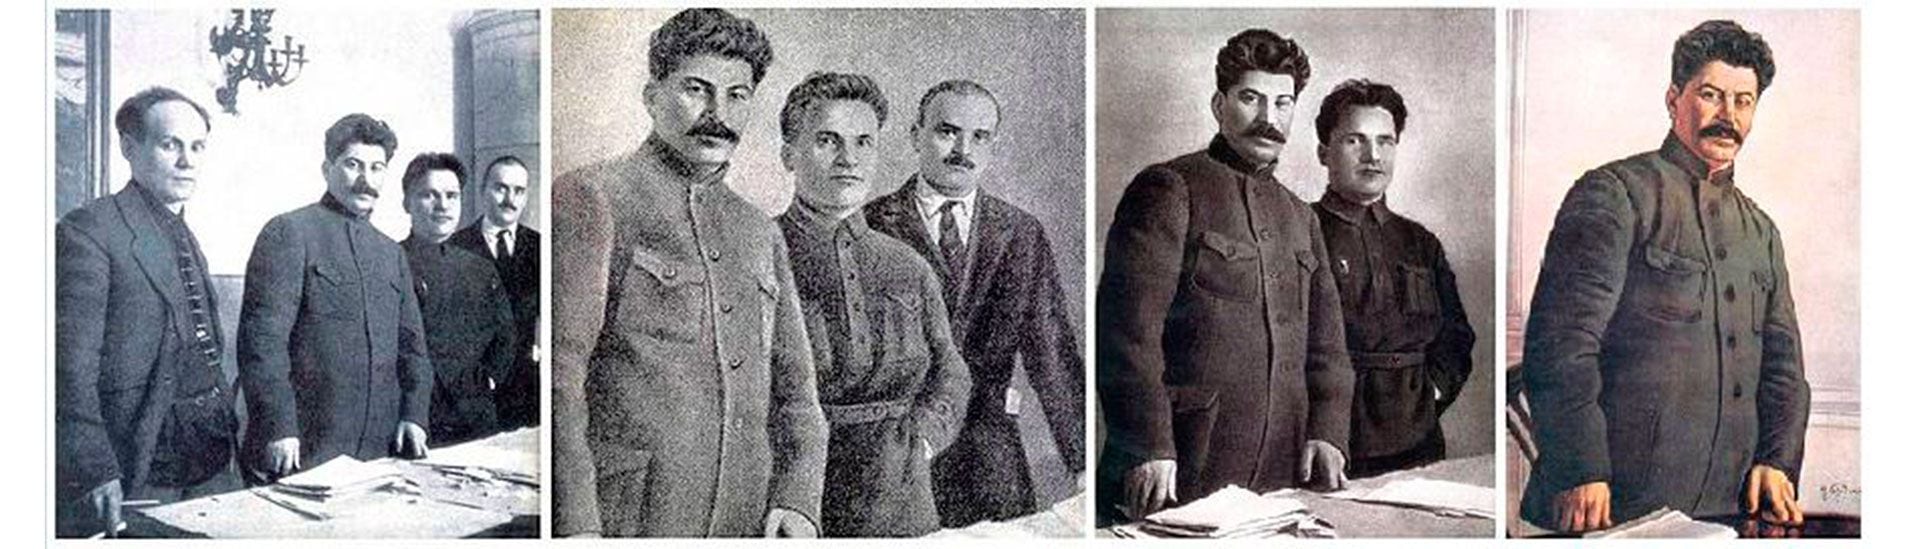 En la foto original, de izquierda a derecha, Nikolai Antipov (antiguo Comisario del Pueblo para Correos y Telégrafos de la URSS), Joseph Stalin, Sergei Kirov y Nikolai Shvernik. Cada uno de los integrantes de la foto original fue eliminado a medida que caía en desgracia. Wikimedia Commons